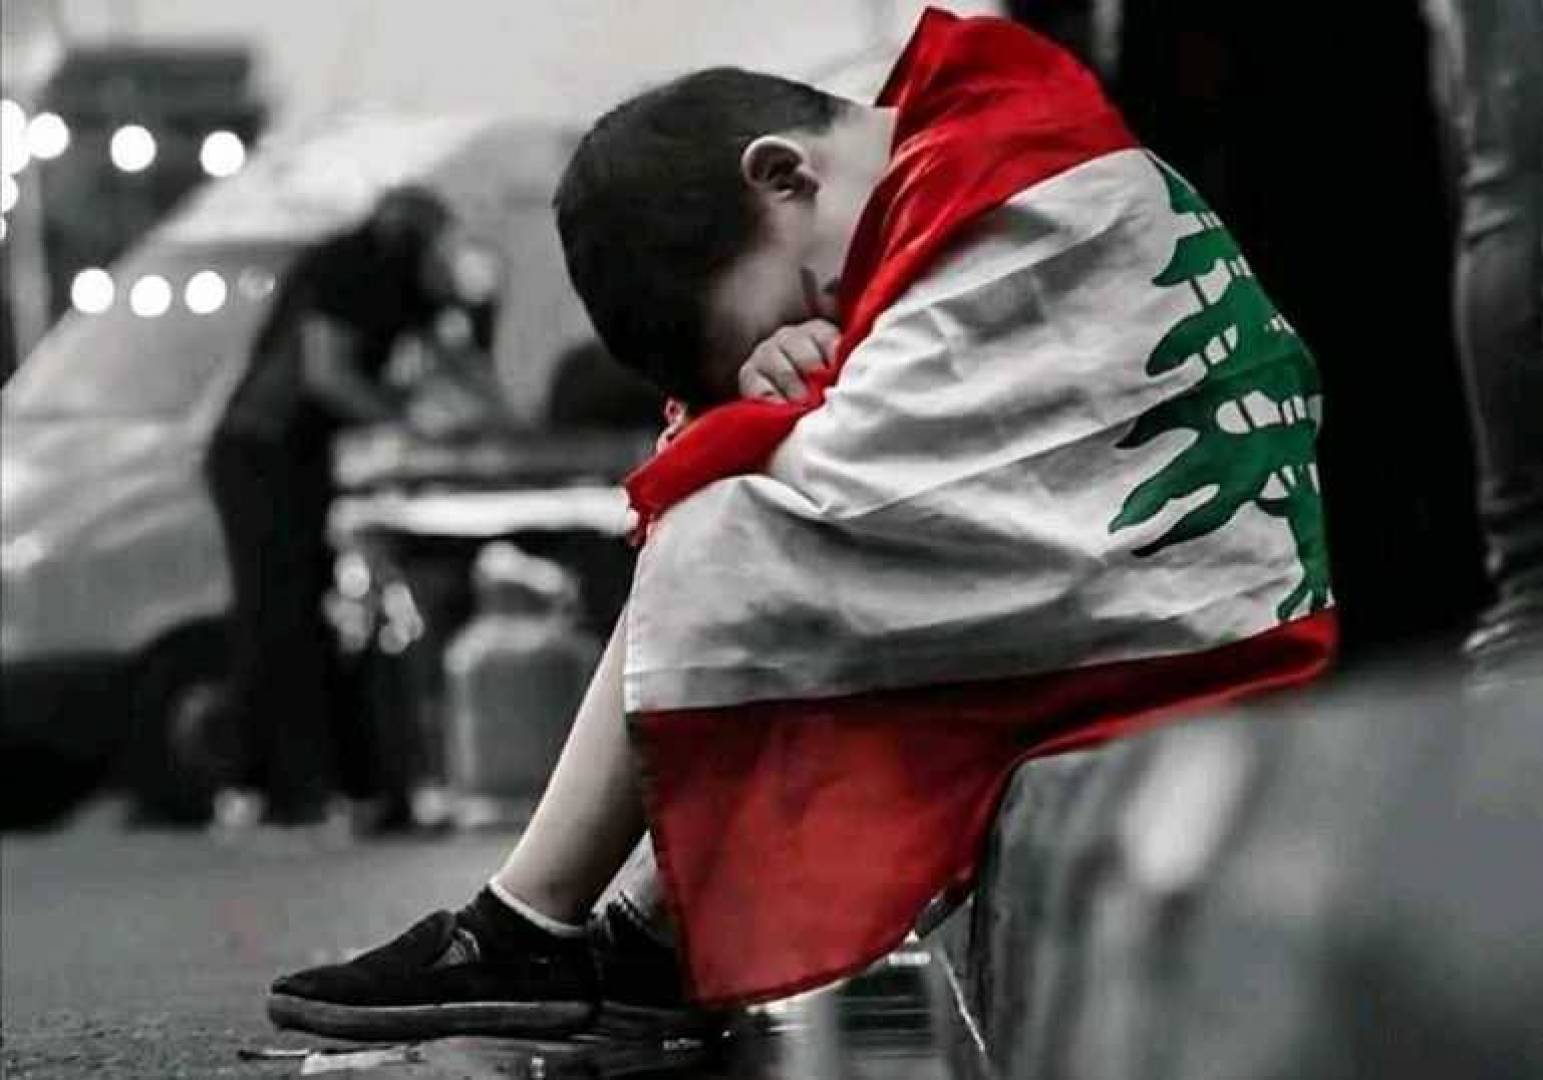 الحكومة اللبنانية تمعن في تدمير المجتمع ومستقبل البلد لا يبشر بالخير »  وكالة الوطن الإخبارية